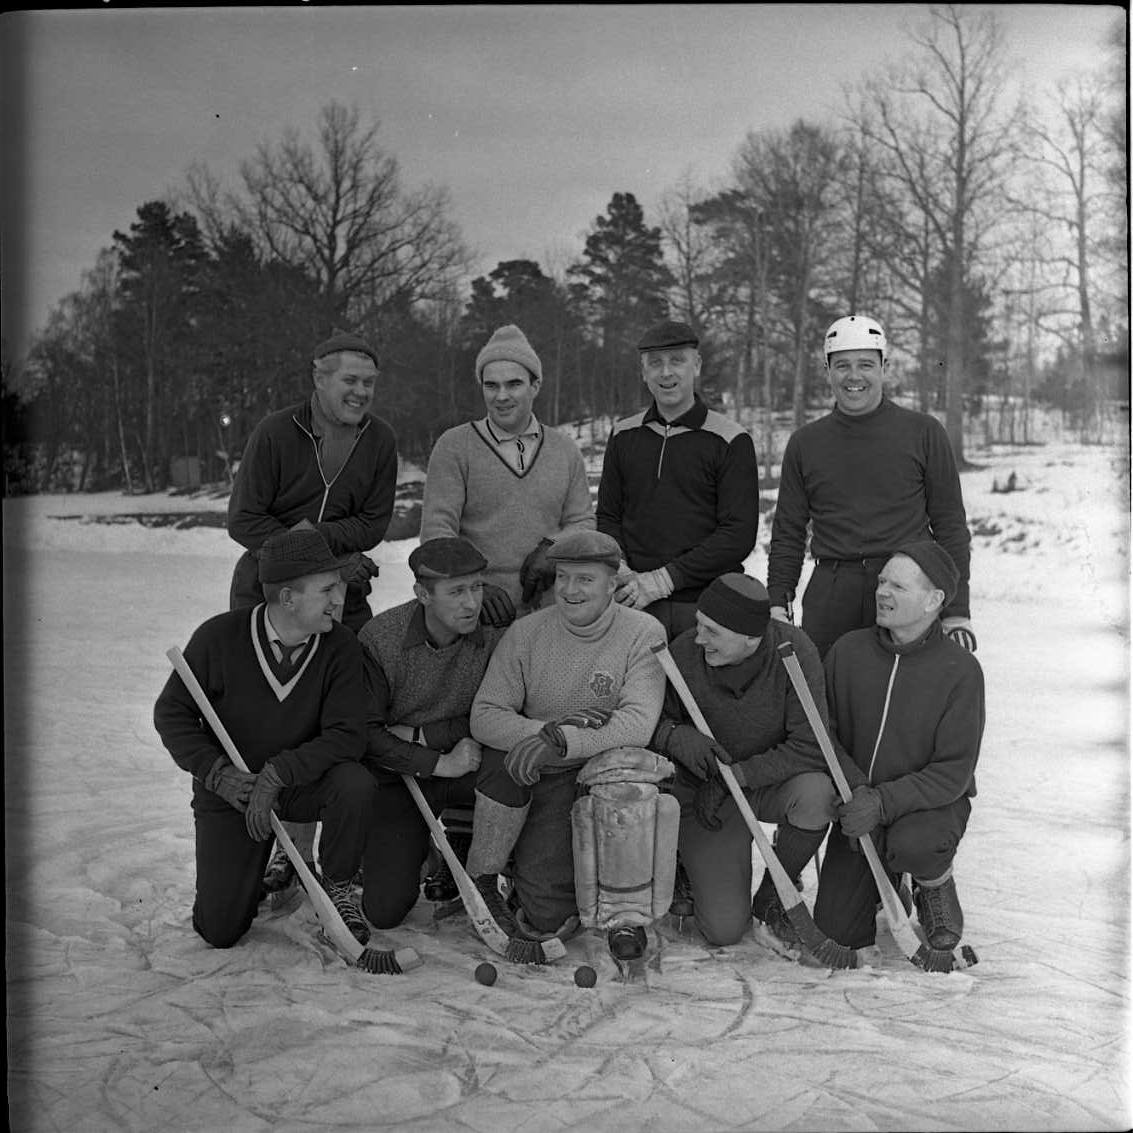 Lagbild med Gränna AIS veteranlag i bandy 1966. På bilden syns Lennart Blom, H Magnusson, I Karlsson, I Lagosi, S-E Thörn, "Kanon" Moreau, "Lalle", "Rulle" och "Knatten. De befinner sig sannolikt på Åsavallen, Grännaberget.